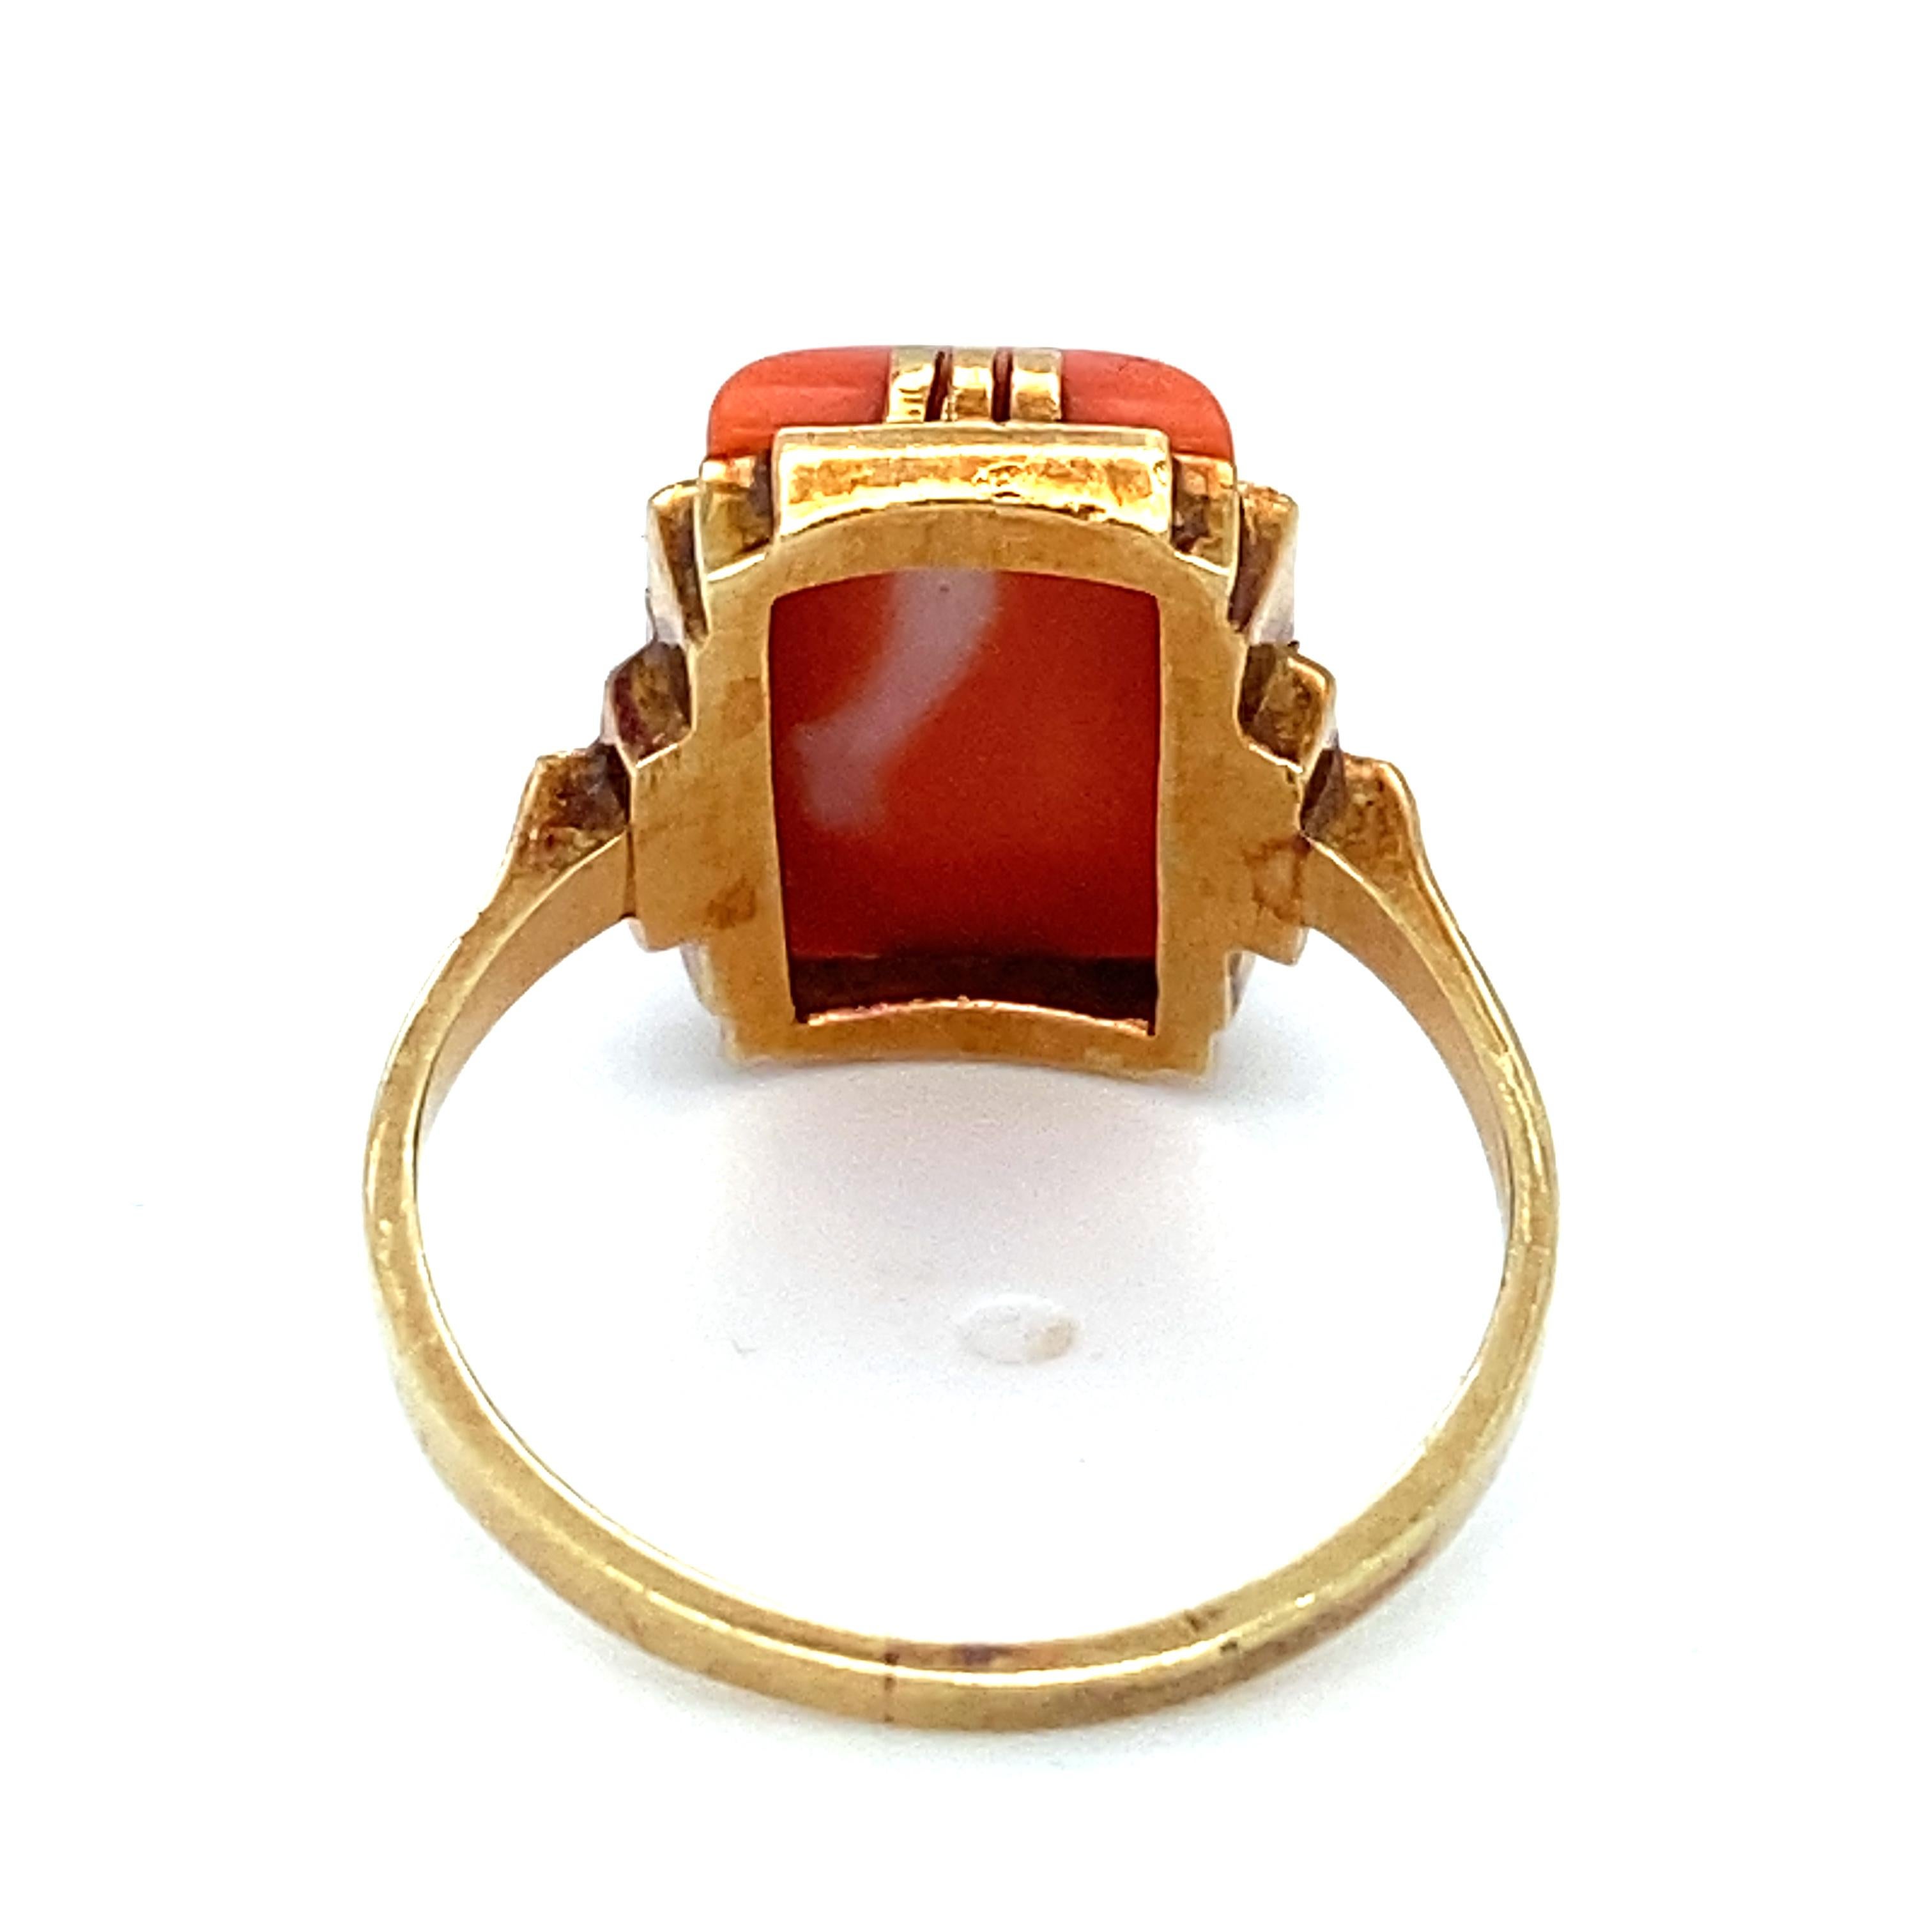 Artikel-Details: Dieser wunderschöne Ring hat einen leuchtend orangefarbenen Korallenstein und ist in einem einzigartigen Art-Deco-Design gefertigt. Die Farbnuancen von Orangekoralle und Gelbgold verleihen ihm ein schönes Finish. 

CIRCA: 1940er